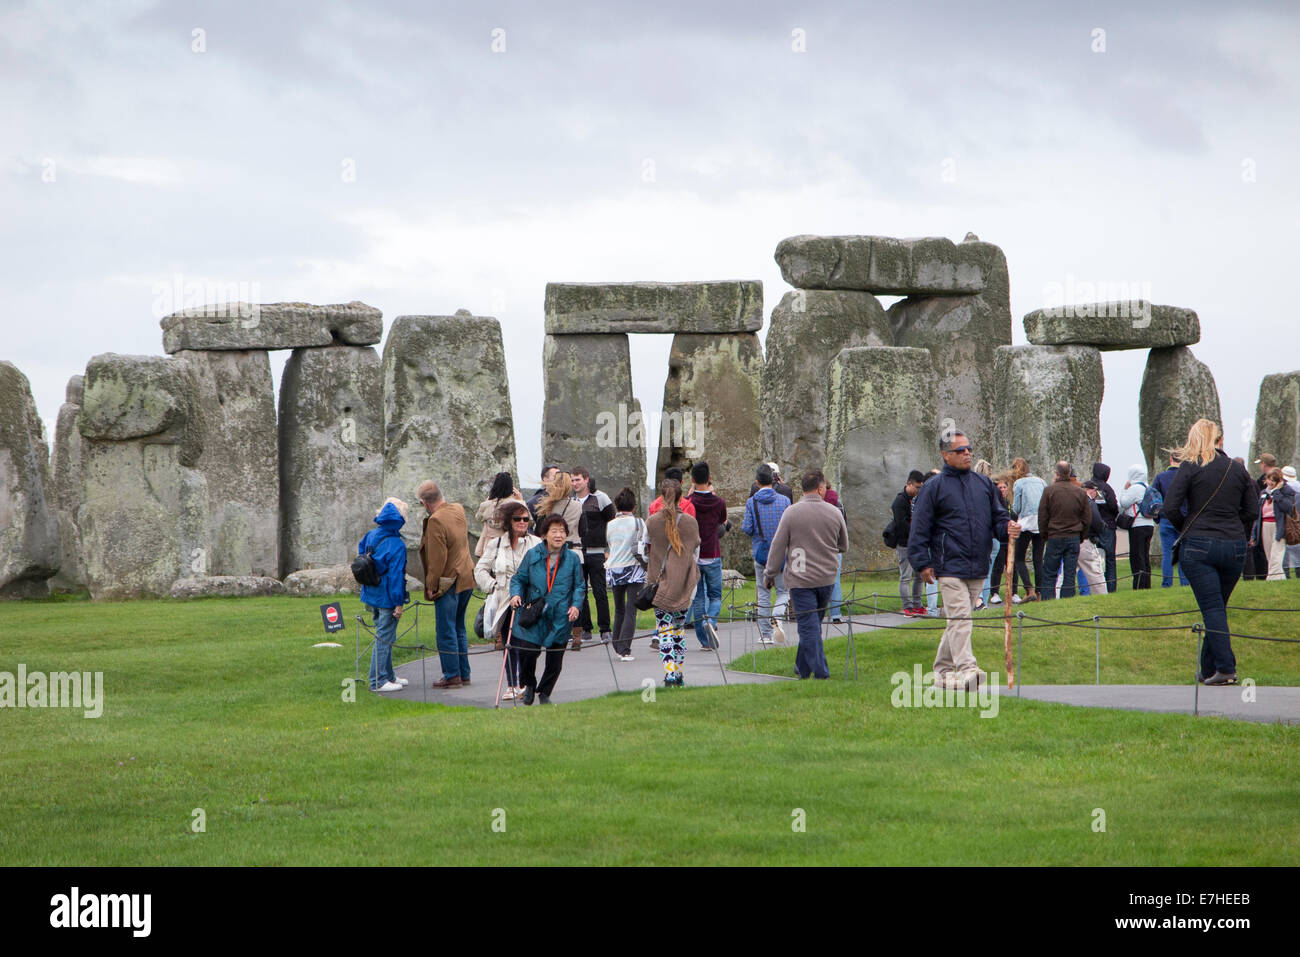 Visite à Stonehenge / Stone Henge de touristes / visiteurs touristiques visiter et voir le monument. UK. Banque D'Images